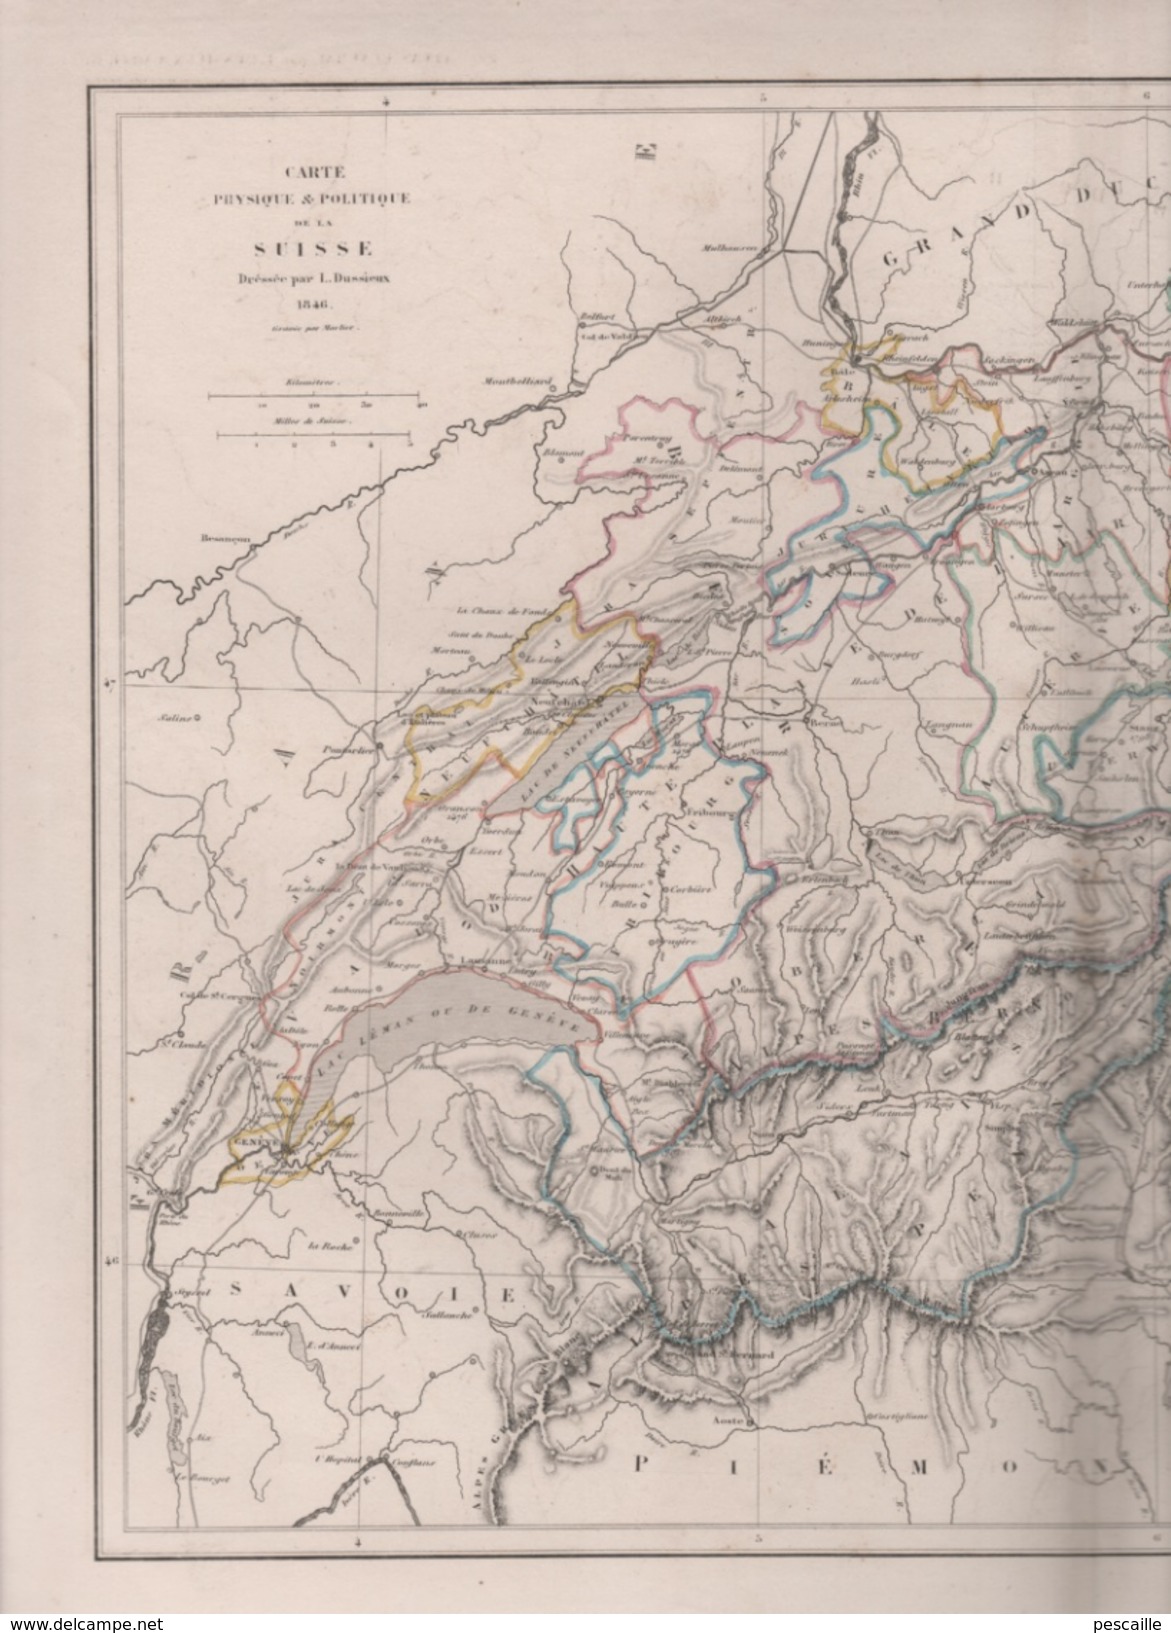 CARTE PHYSIQUE ET POLITIQUE DE LA SUISSE DRESSEE PAR L DUSSIEUX EN 1846 - Landkarten